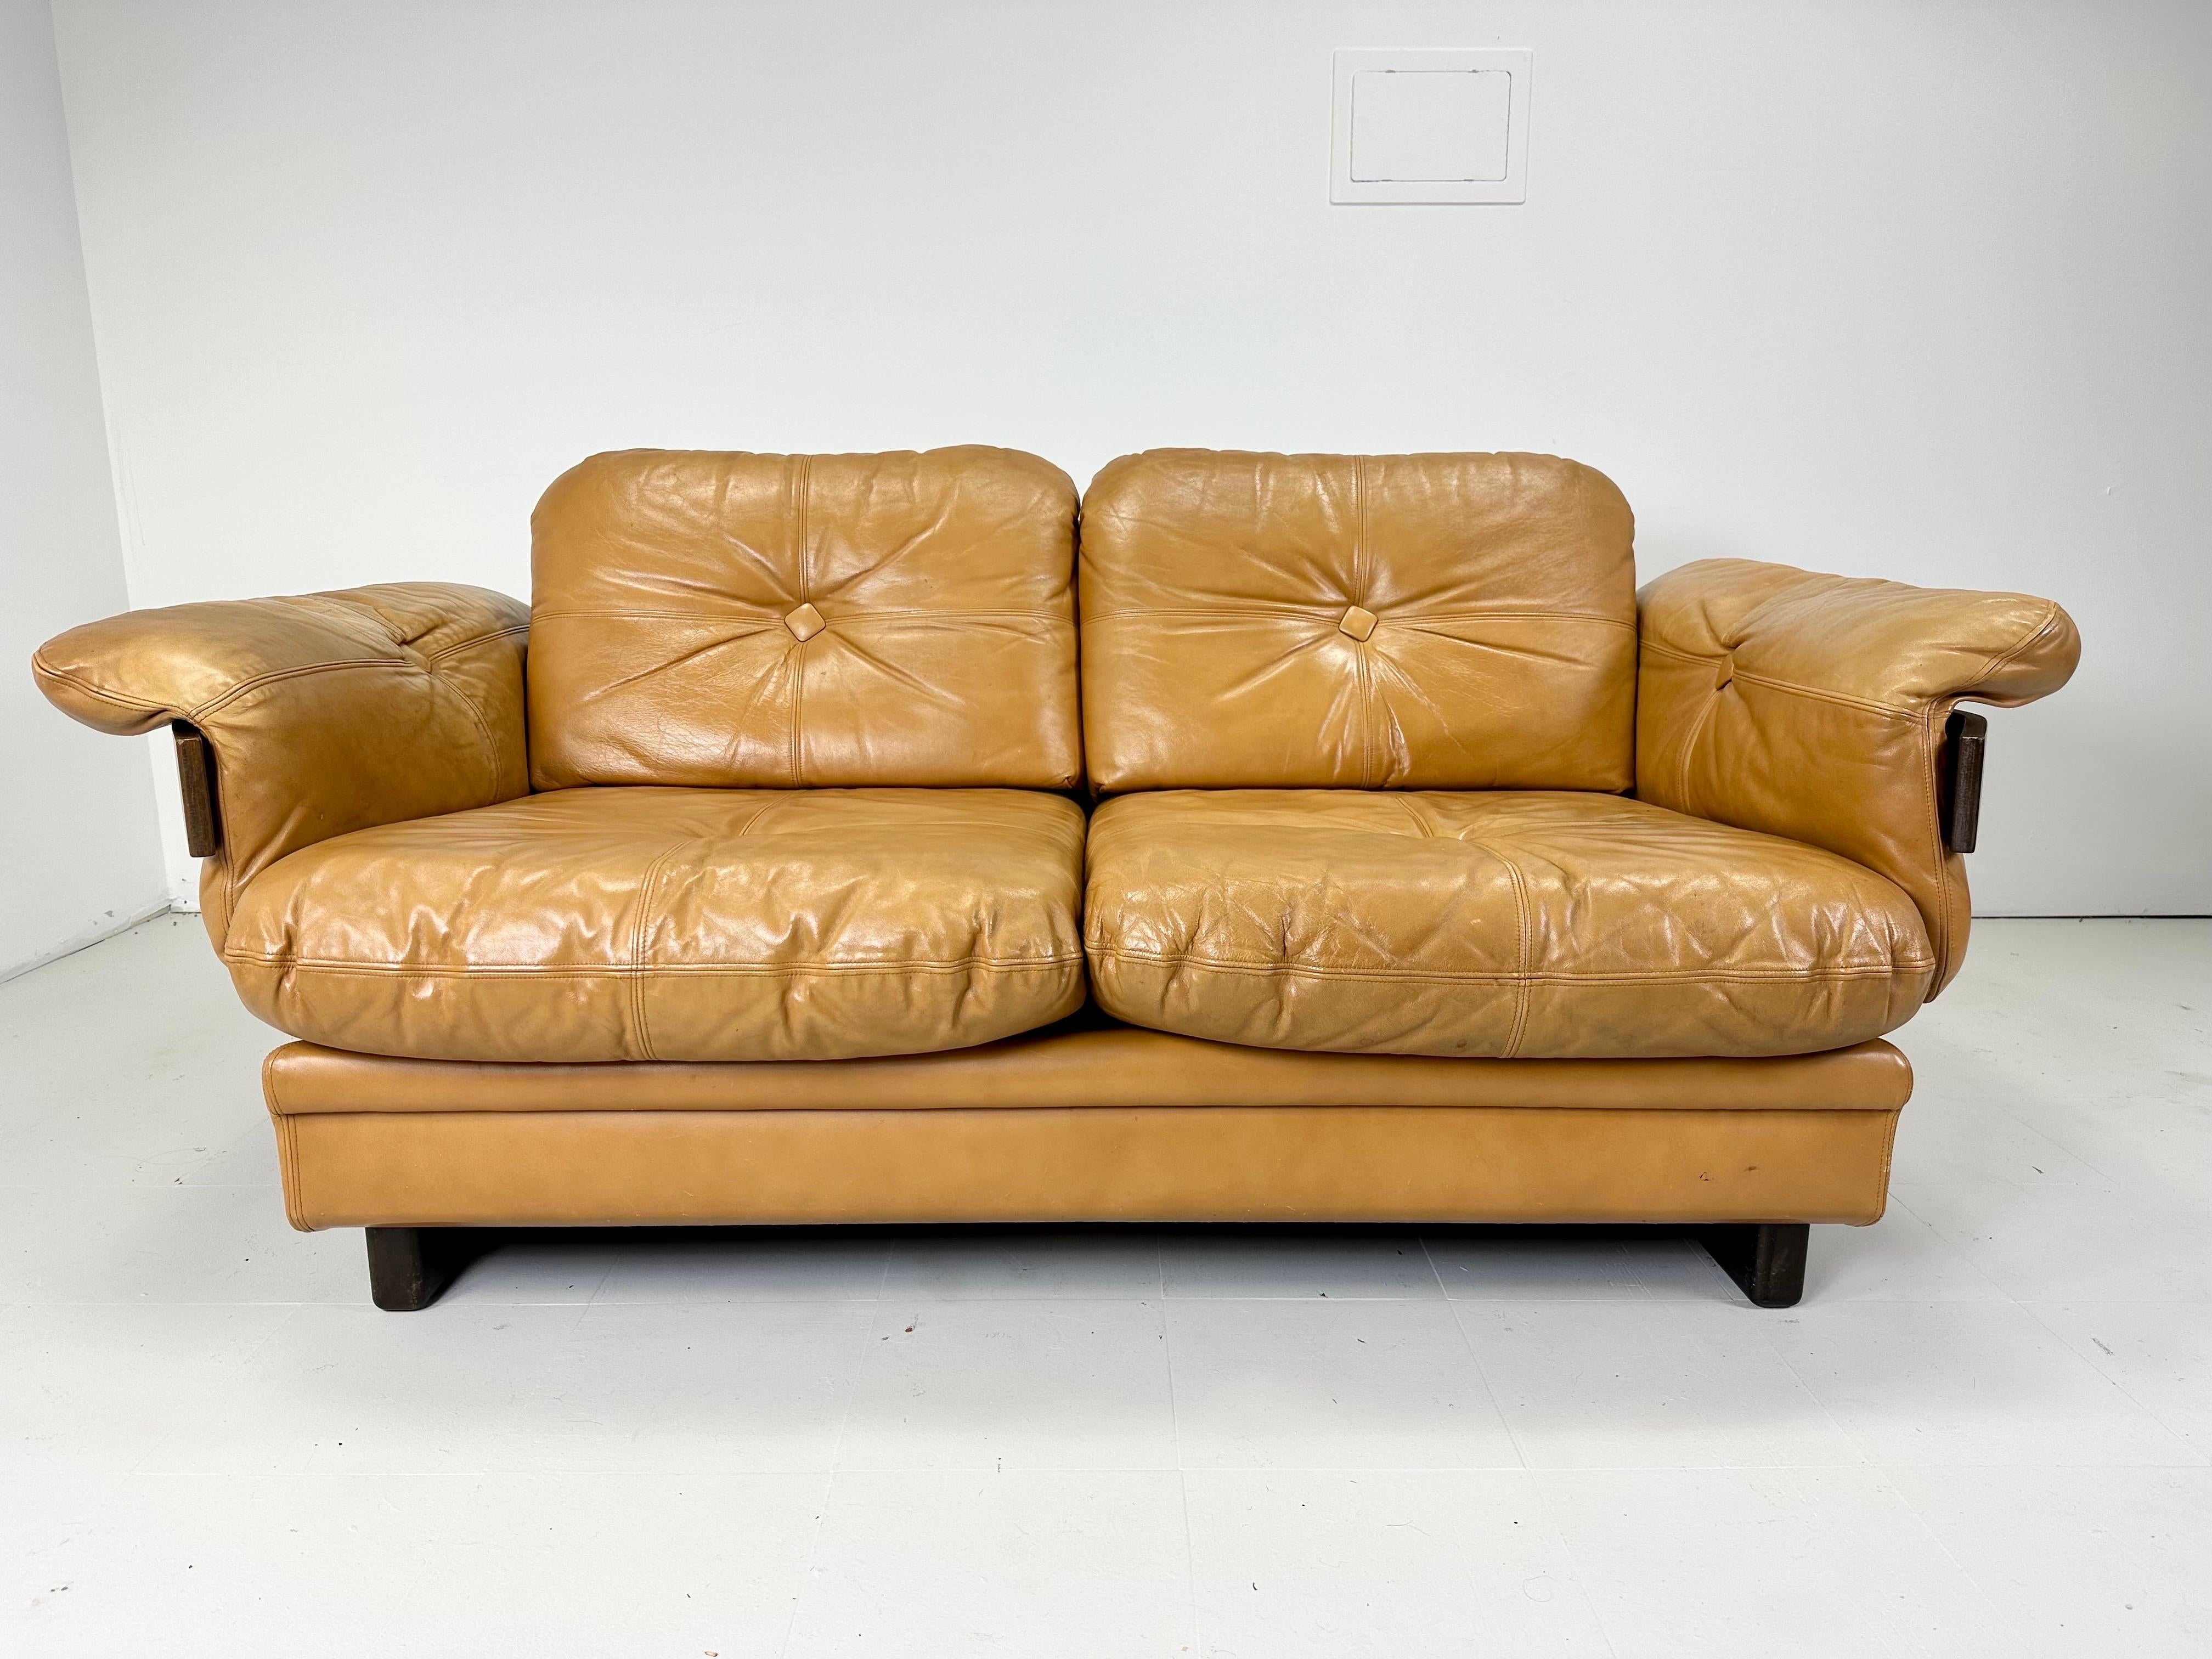 Ledersofa aus den 1970er Jahren. Arme aus Bugholz mit Messingdetails. Knopf-Kissen. Weiches, leichtes, butterscotchfarbenes Vintage-Leder. Das Sofa ist niedrig und tief und bietet so einen hohen Liegekomfort. Passendes Sofa verfügbar

Lieferung an